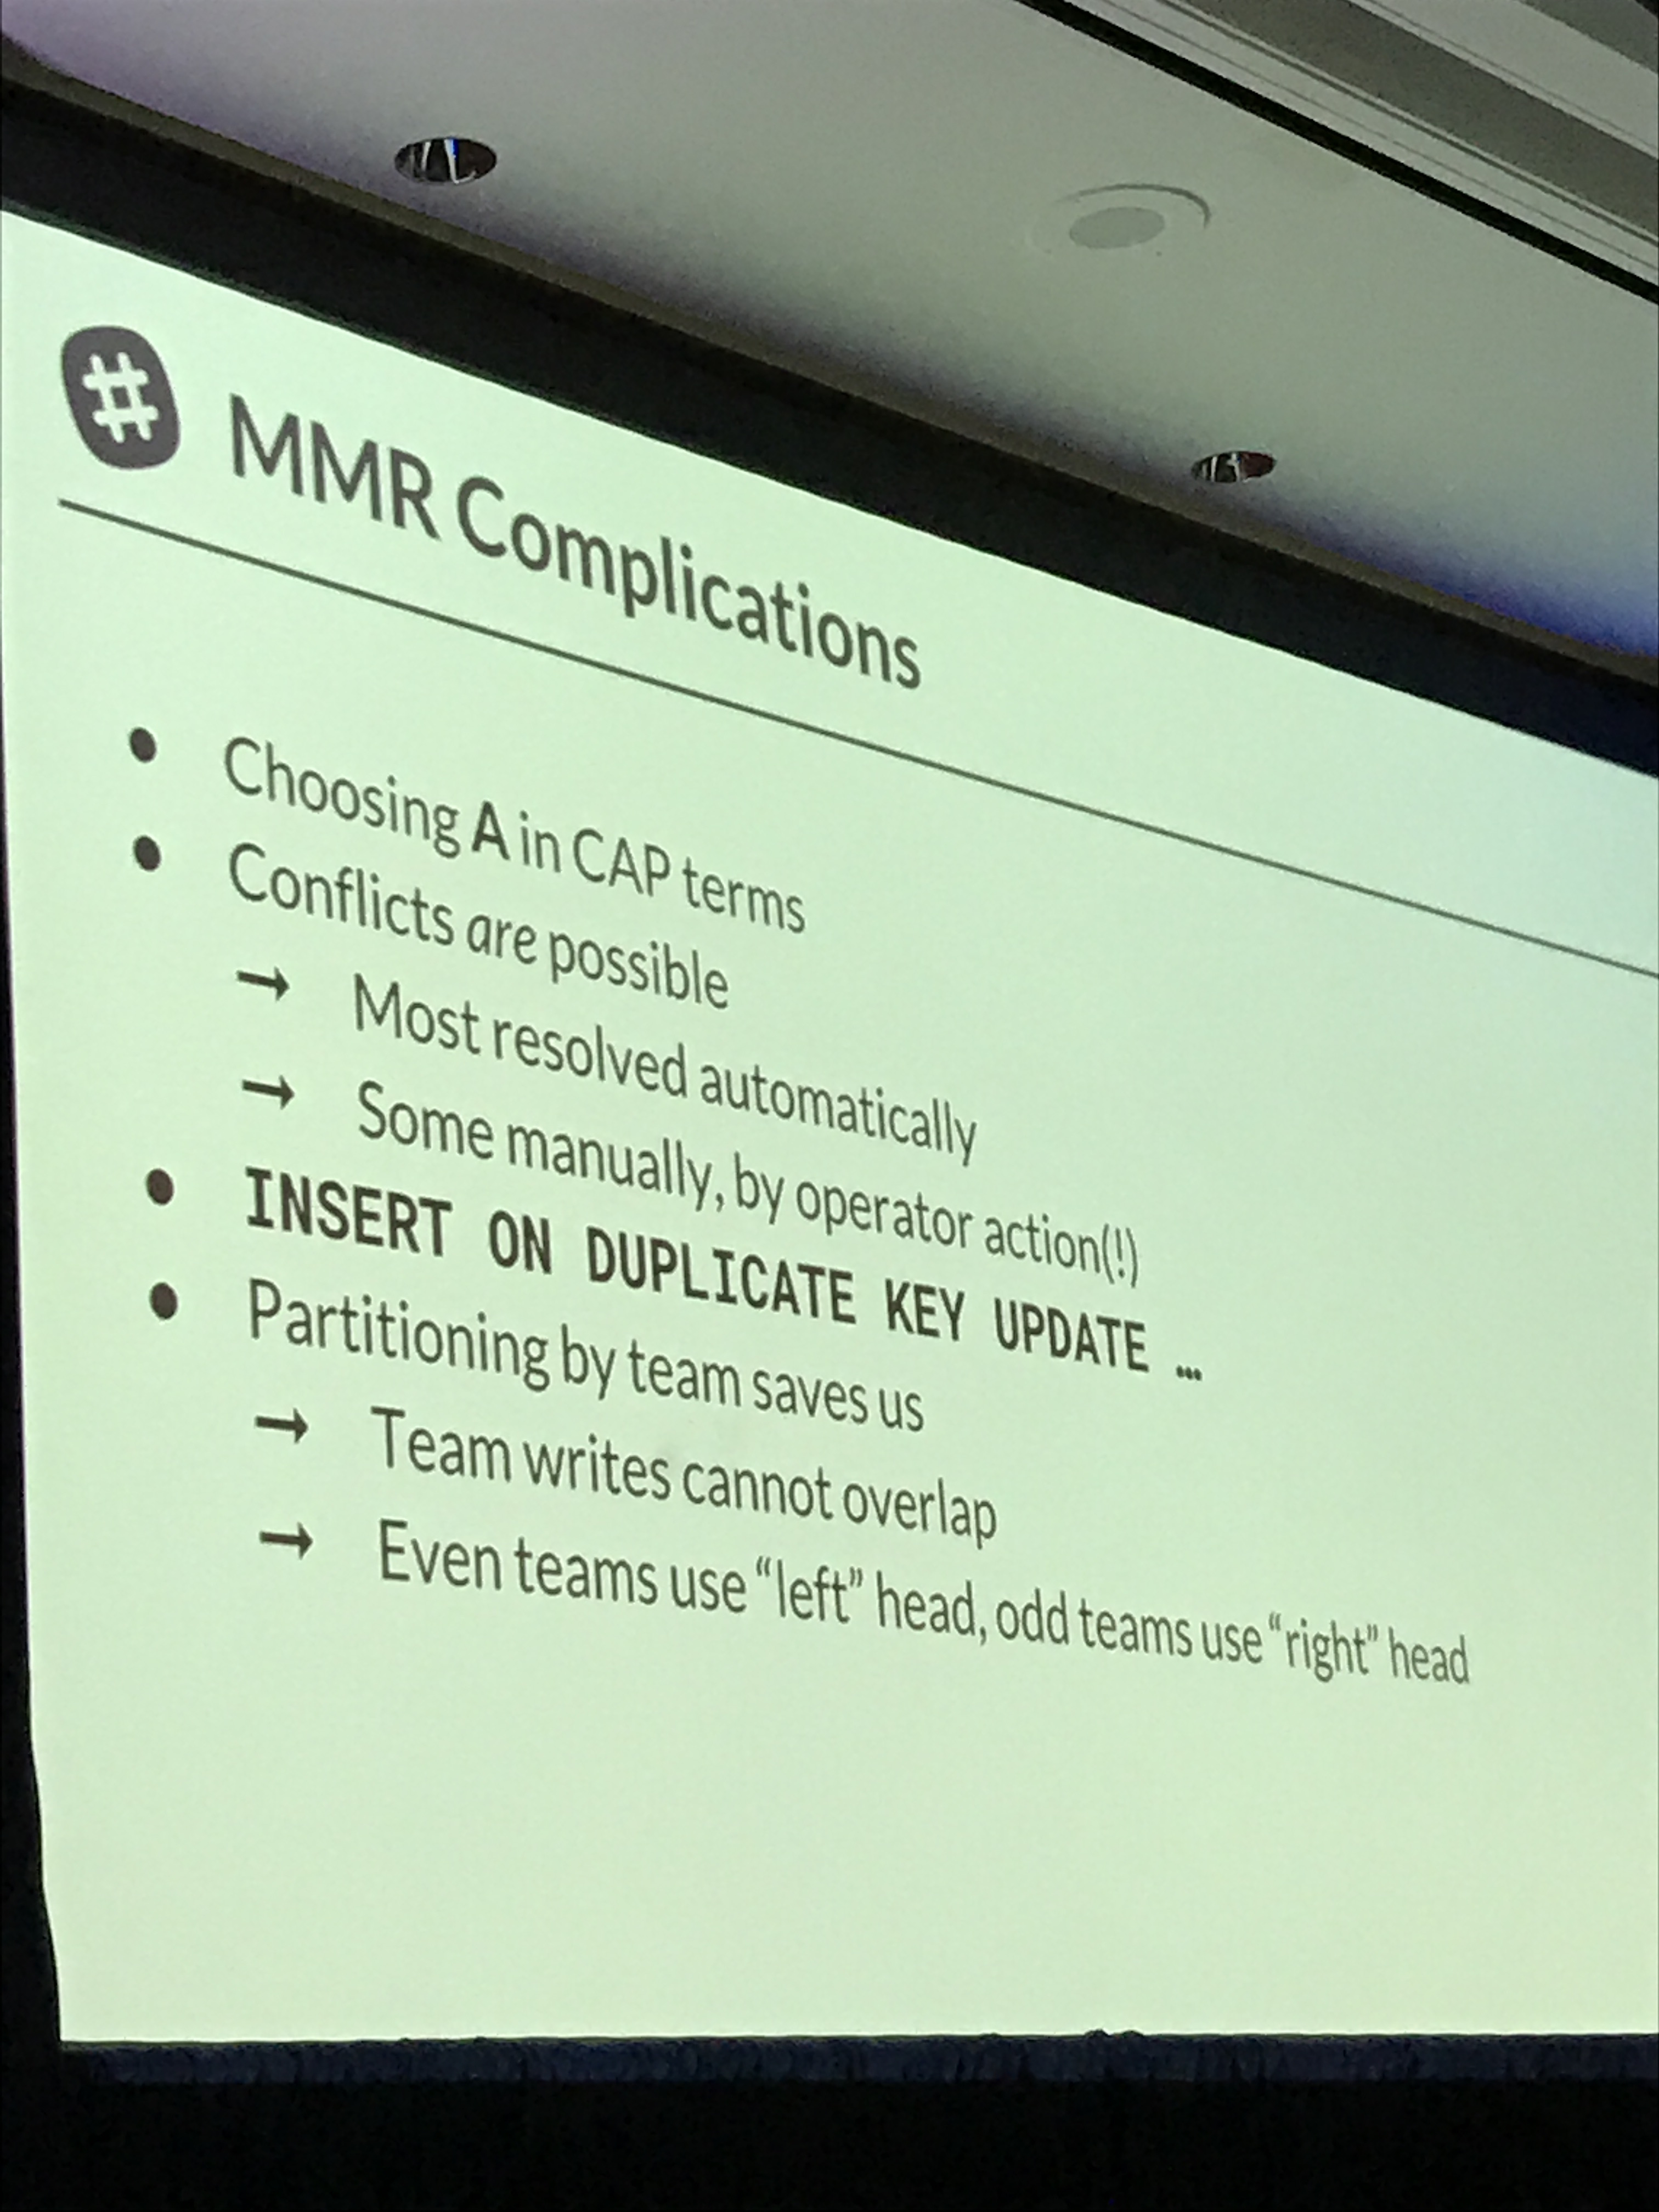 MMR Complications